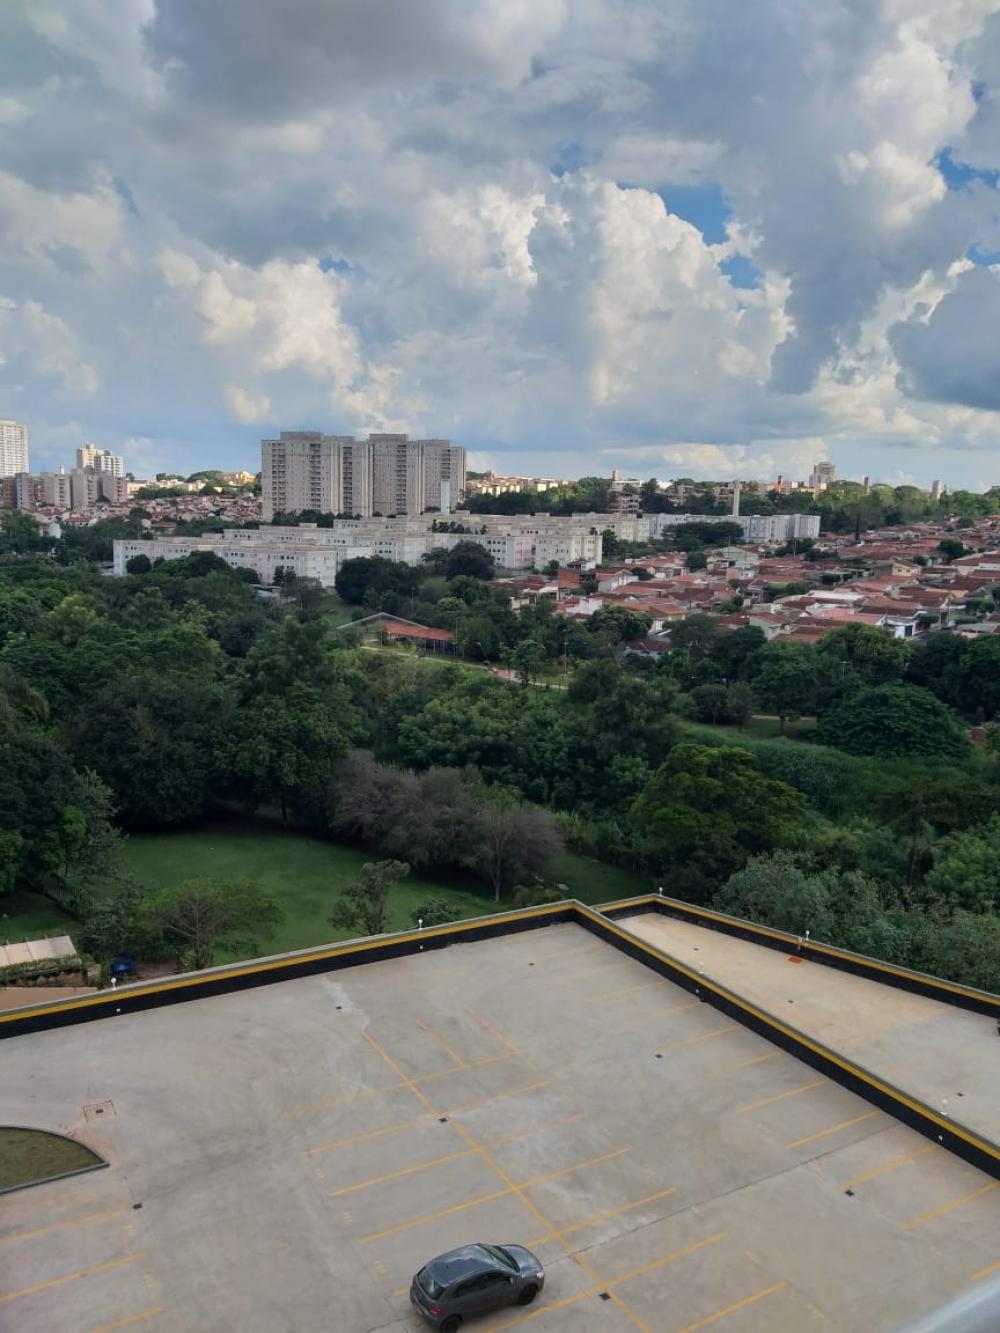 Comprar Apartamento / Padrão em Ribeirão Preto R$ 220.000,00 - Foto 10